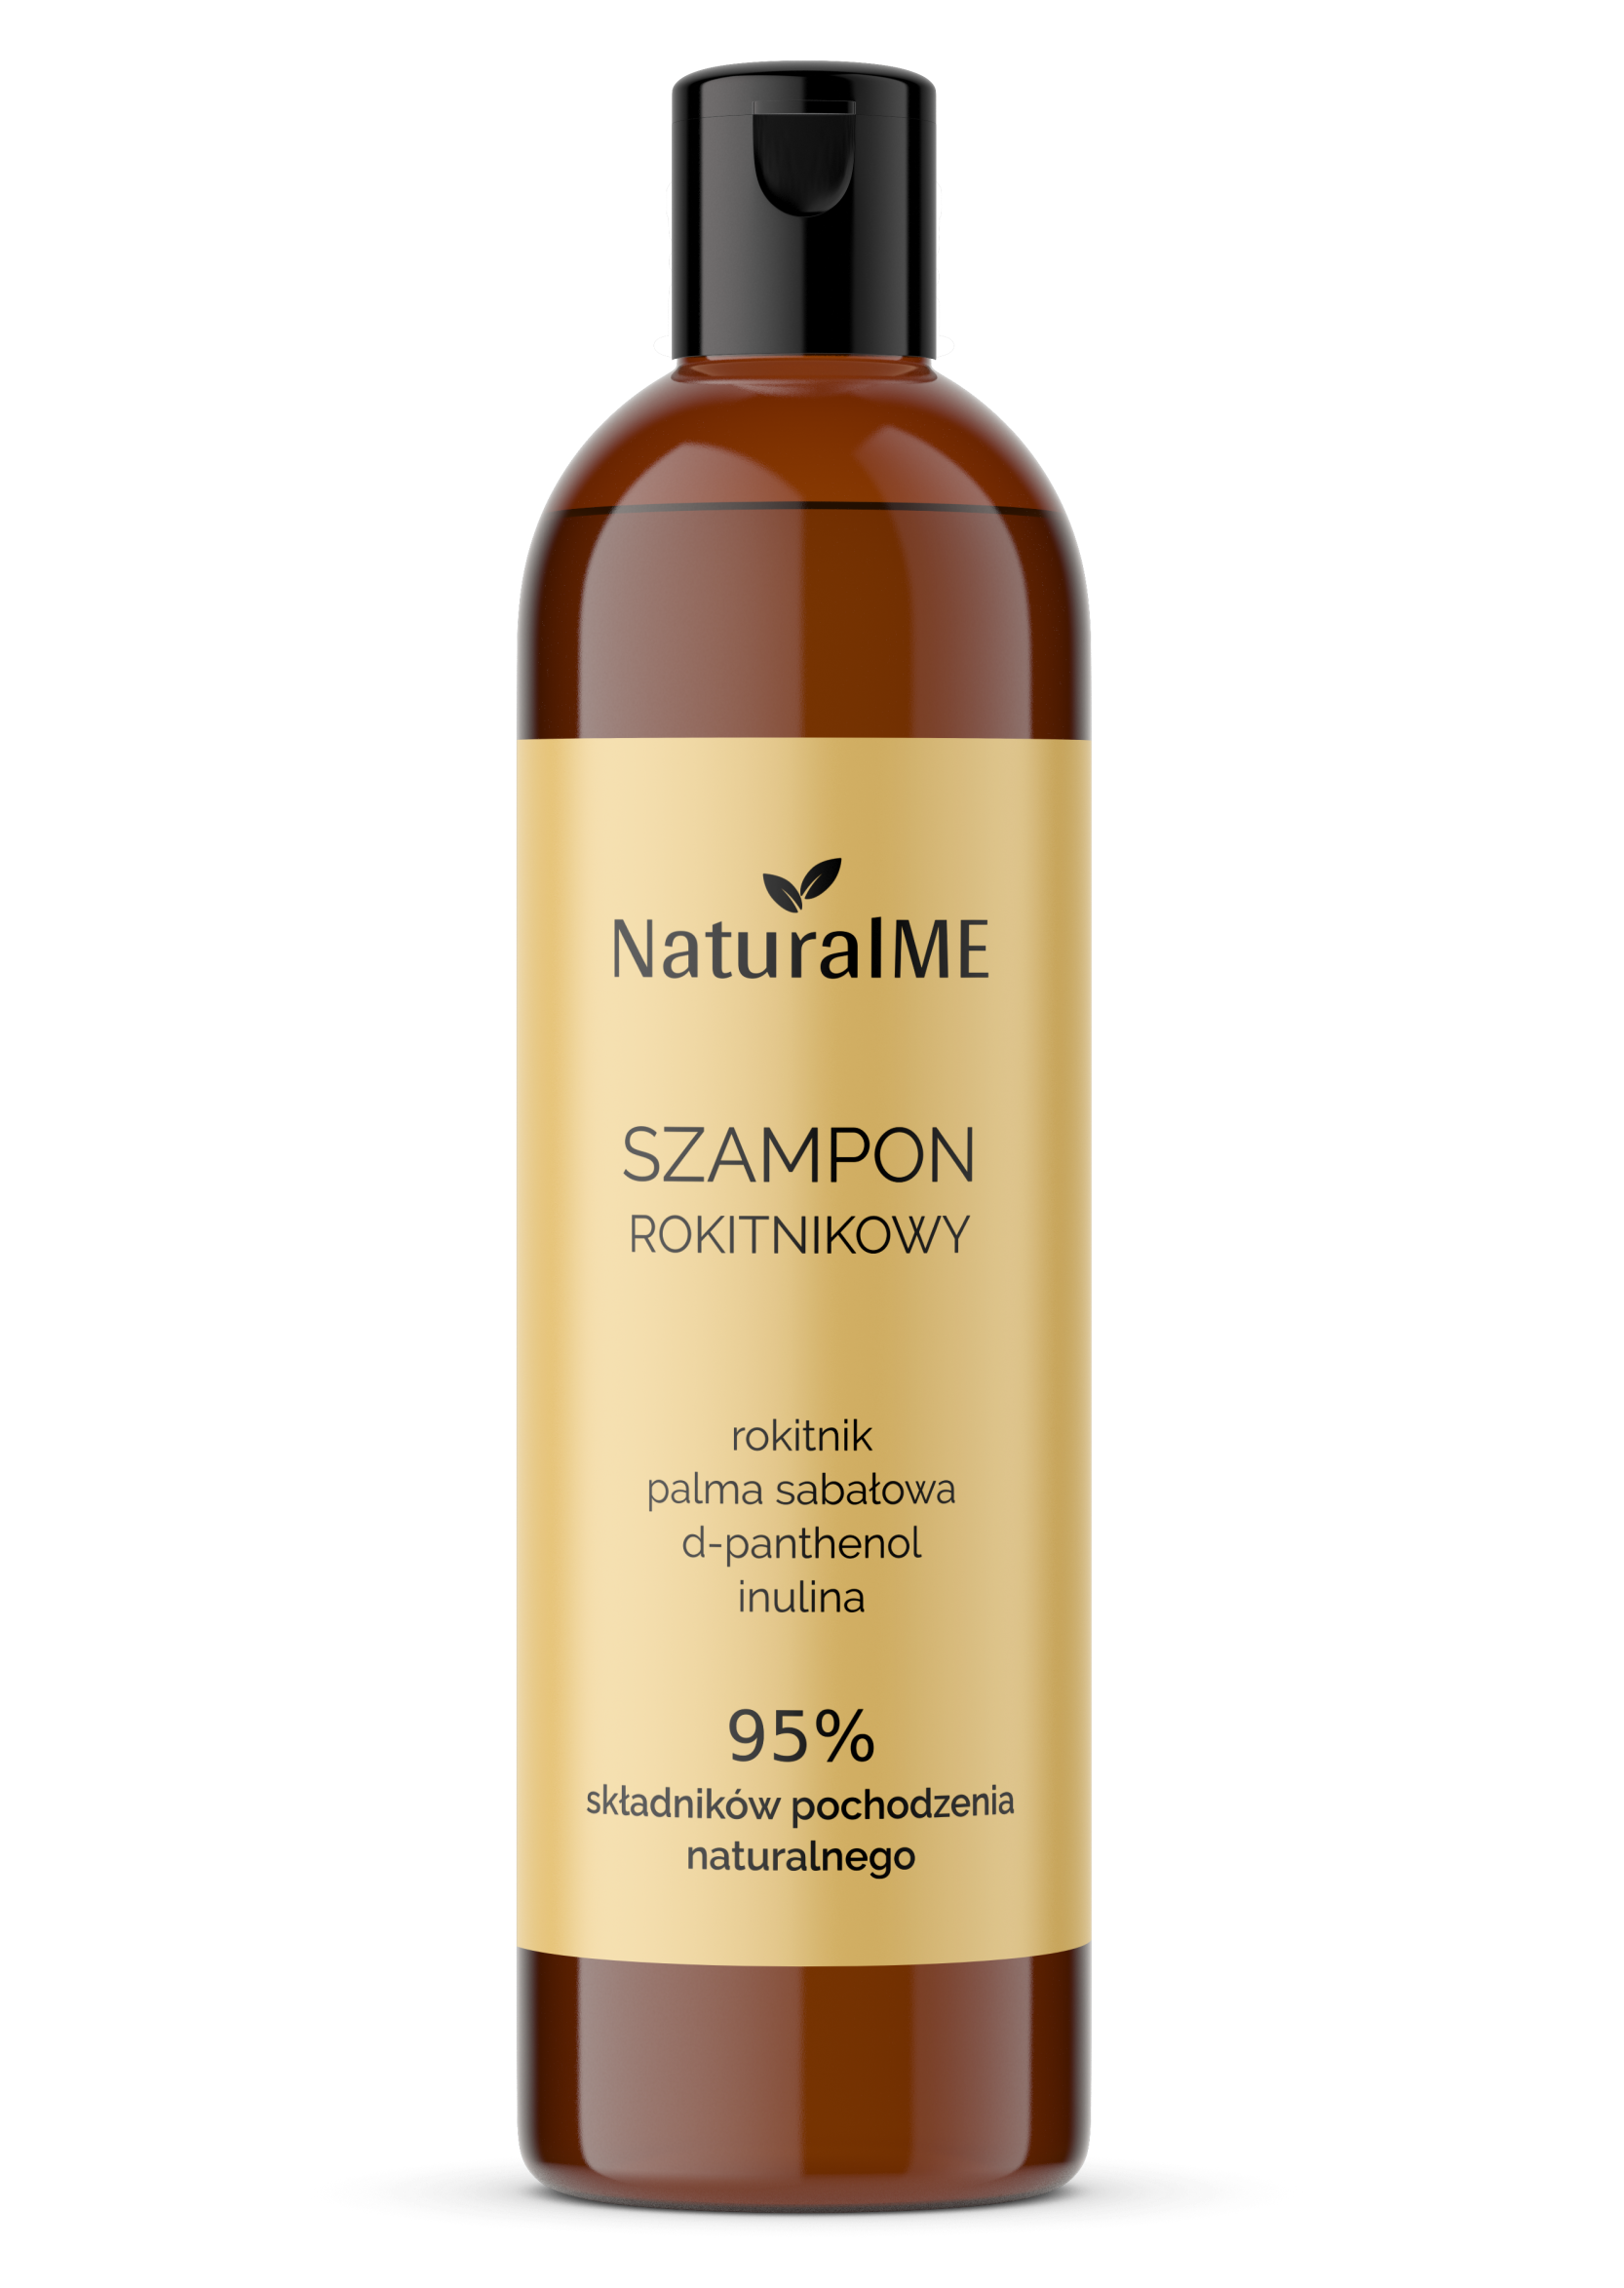 natural me szampon opinie